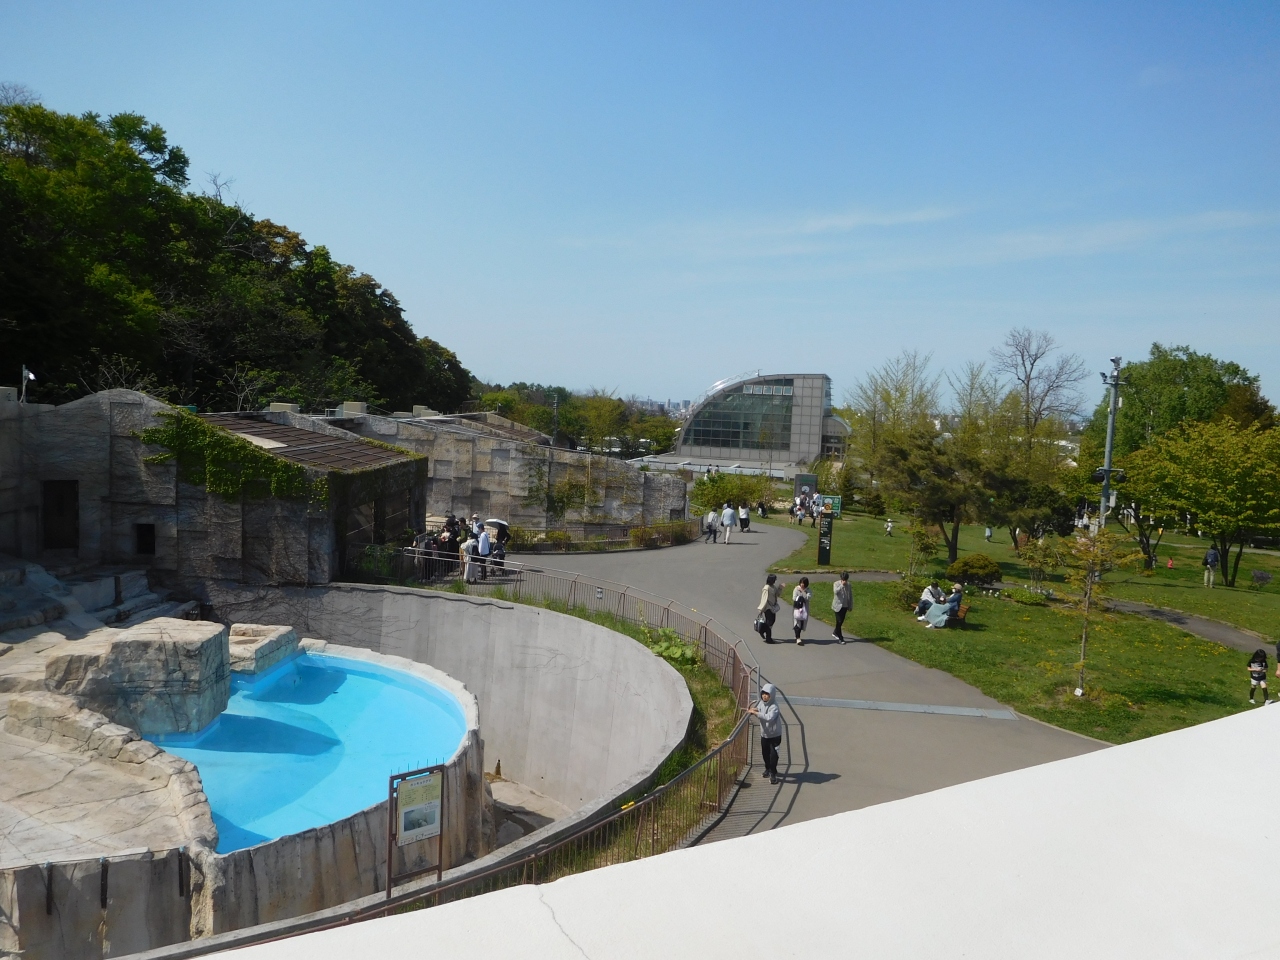 札幌の旅行の春の人気スポット20選　6位:円山動物園